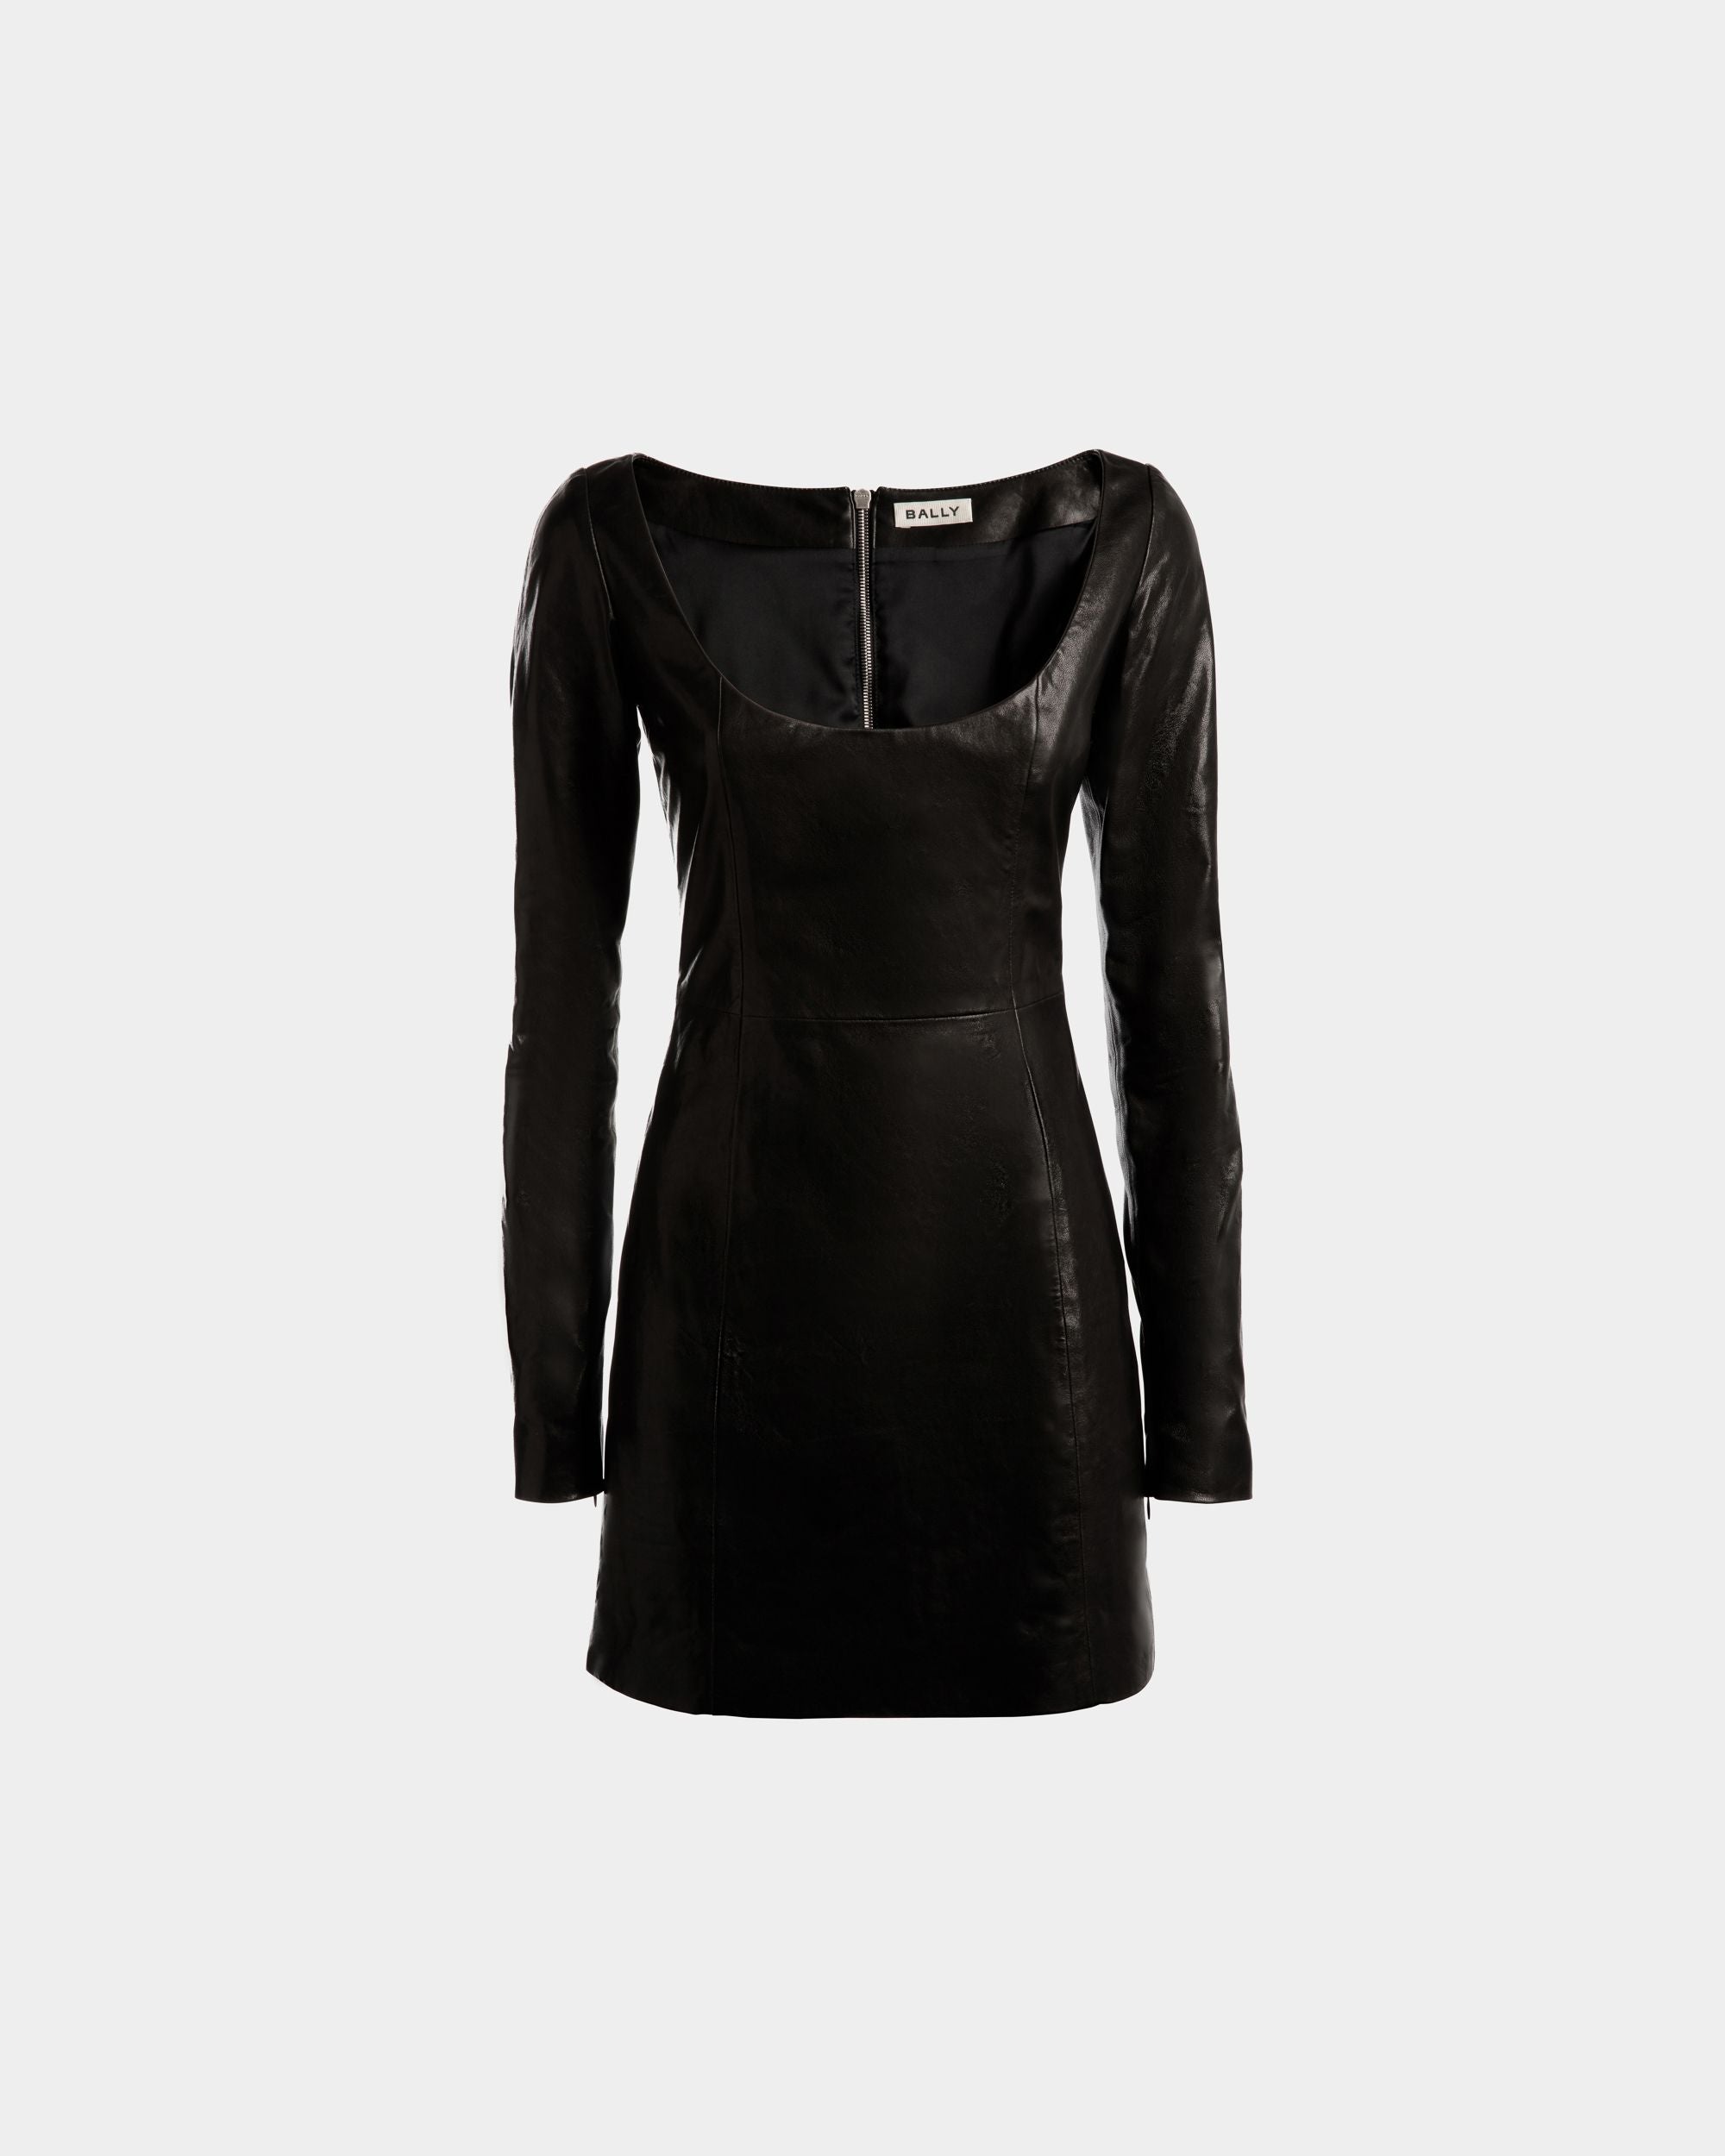 Minikleid für Damen mit langen Ärmeln aus schwarzem Leder | Bally | Still Life Vorderseite